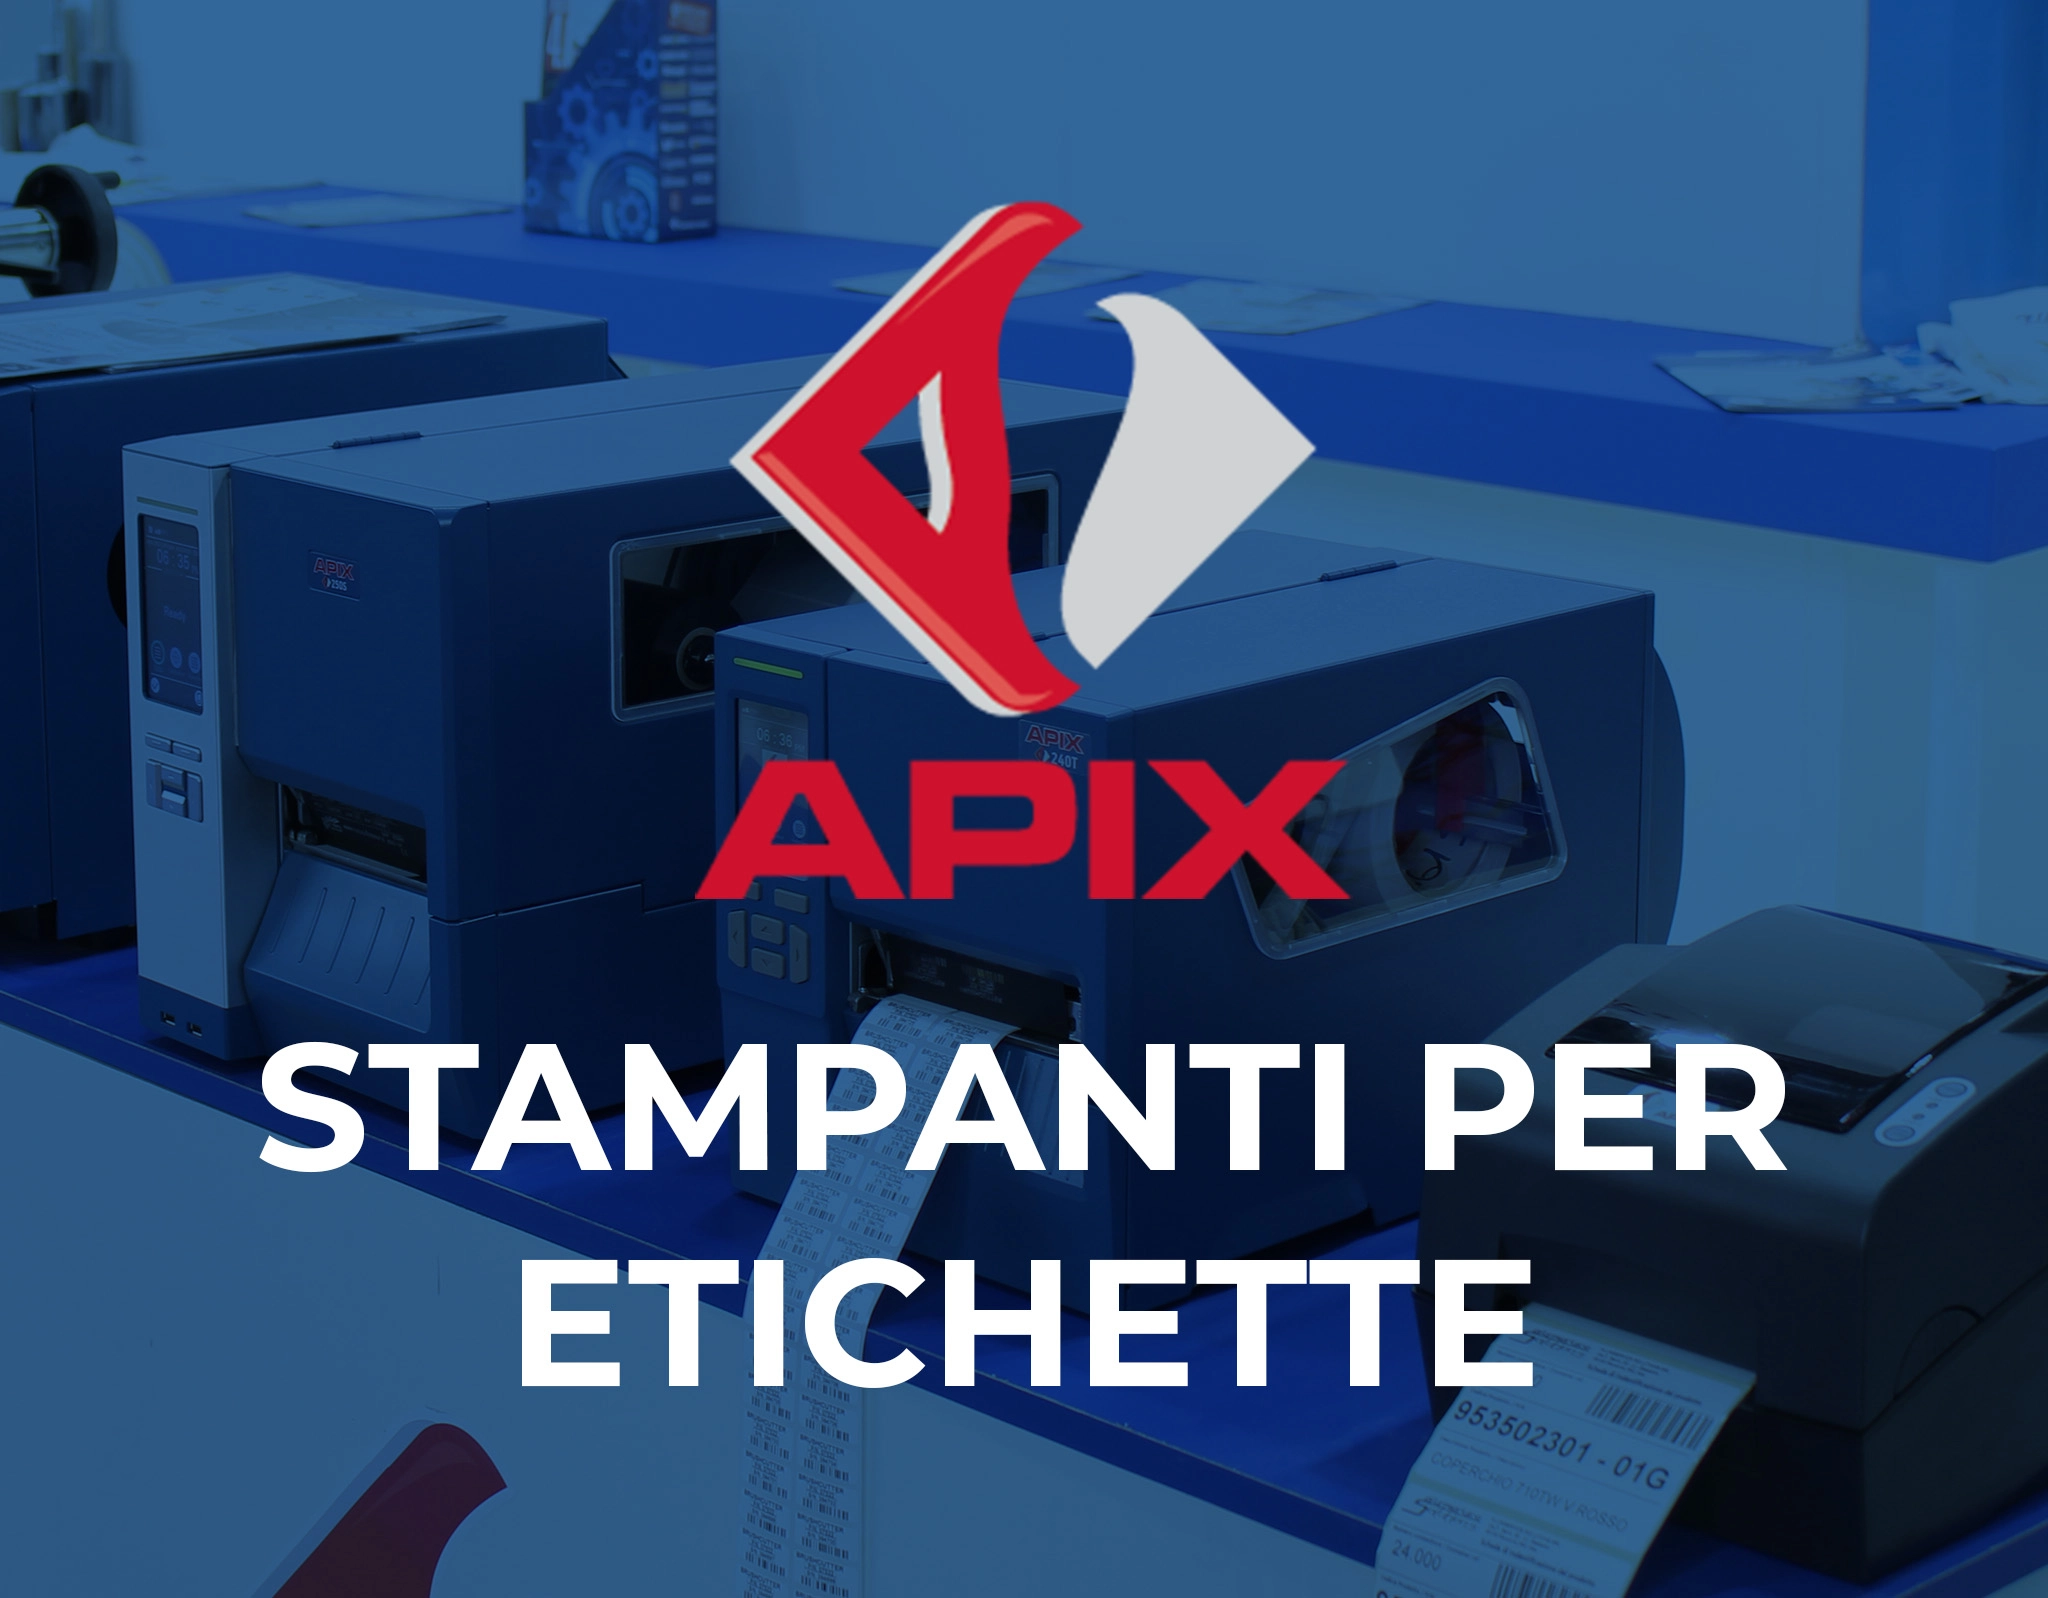 La guida completa sulle stampanti per etichette Apix